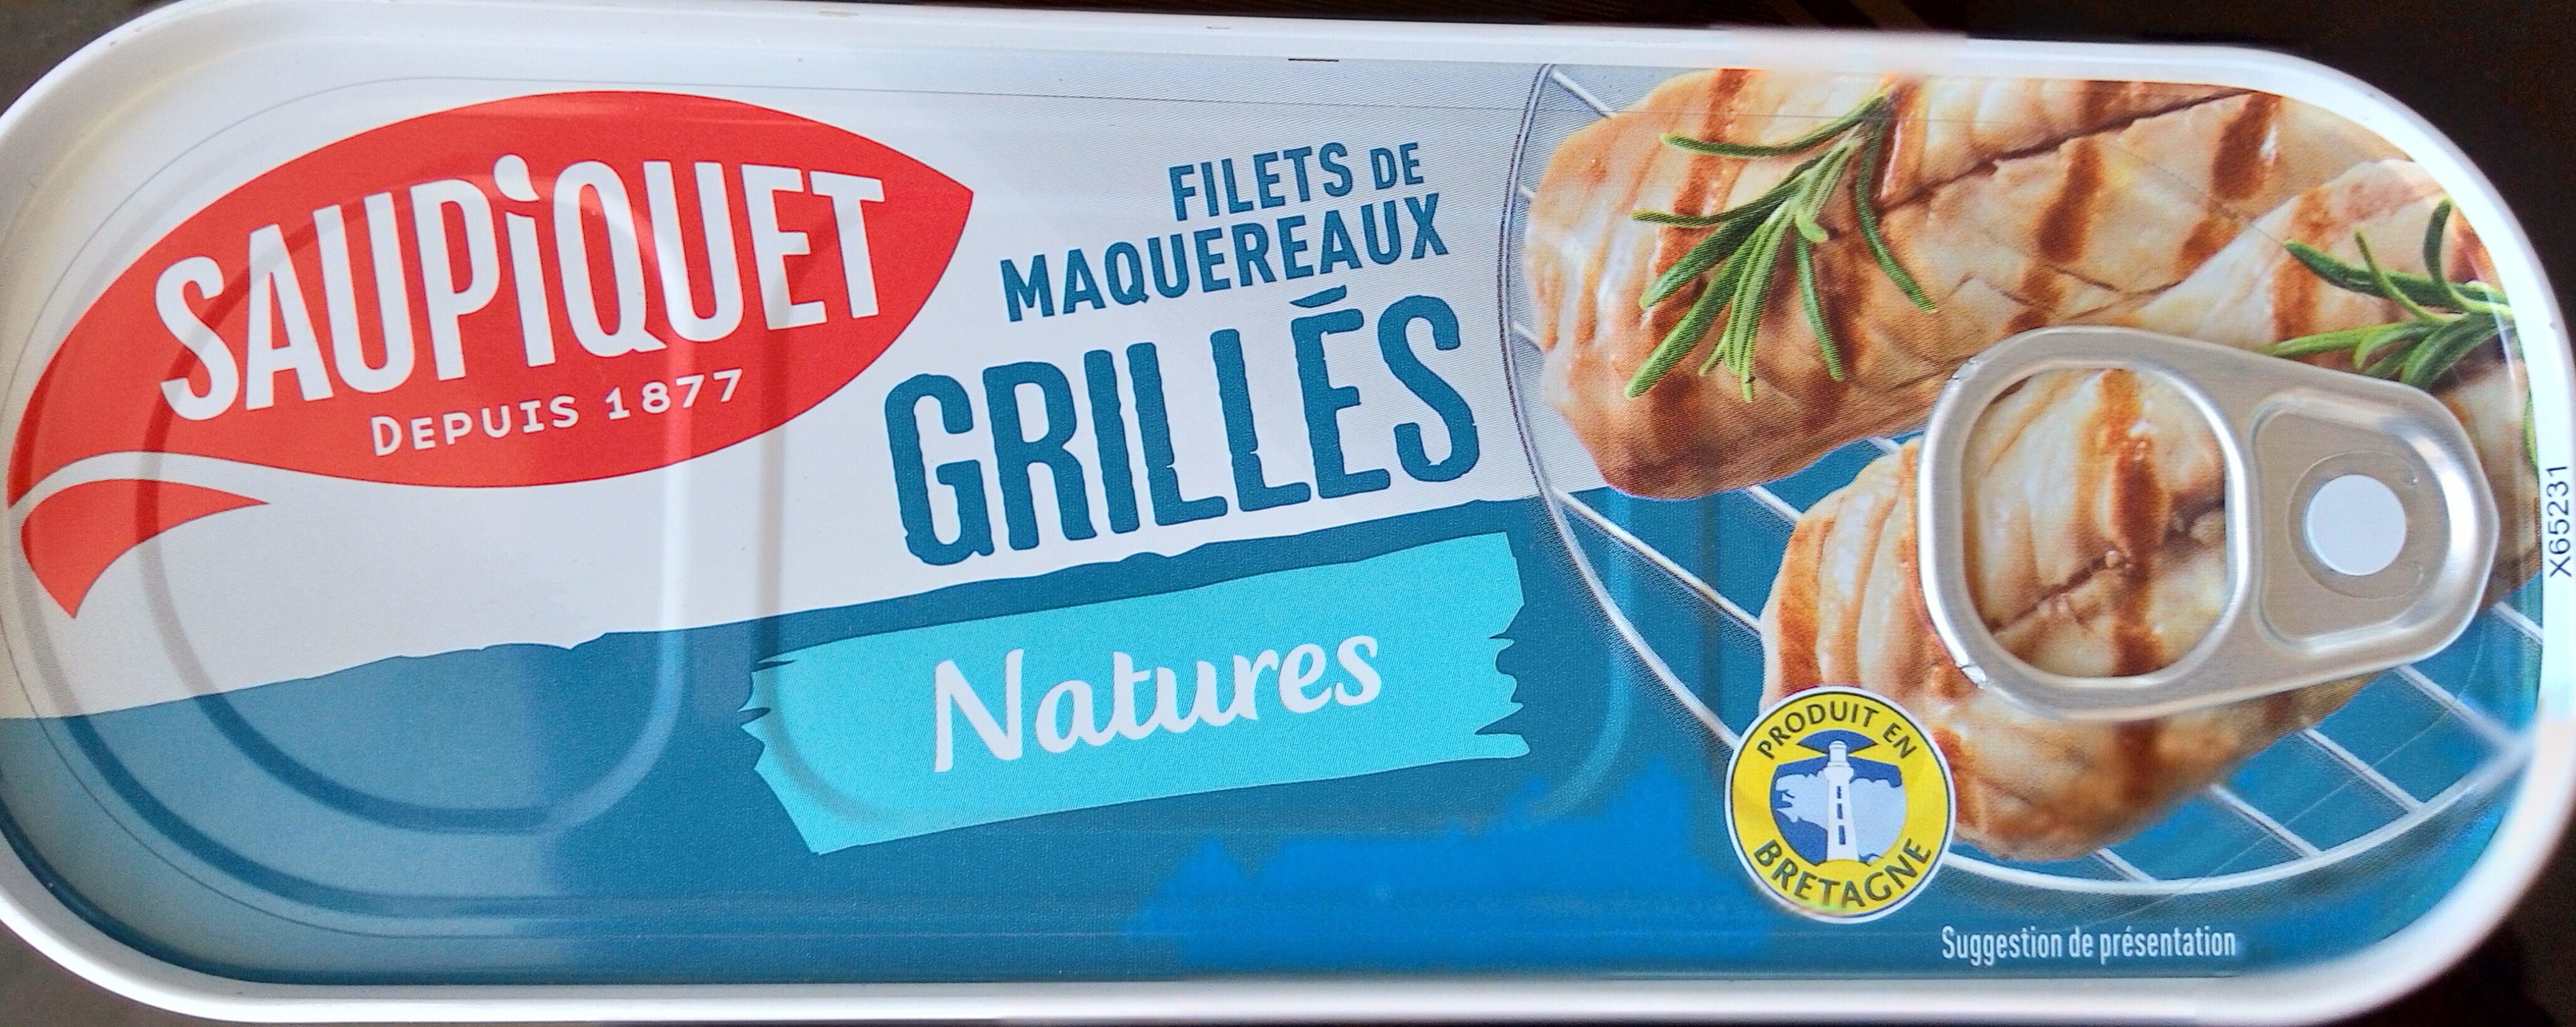 Filets de maquereaux  grillés nature - Product - fr